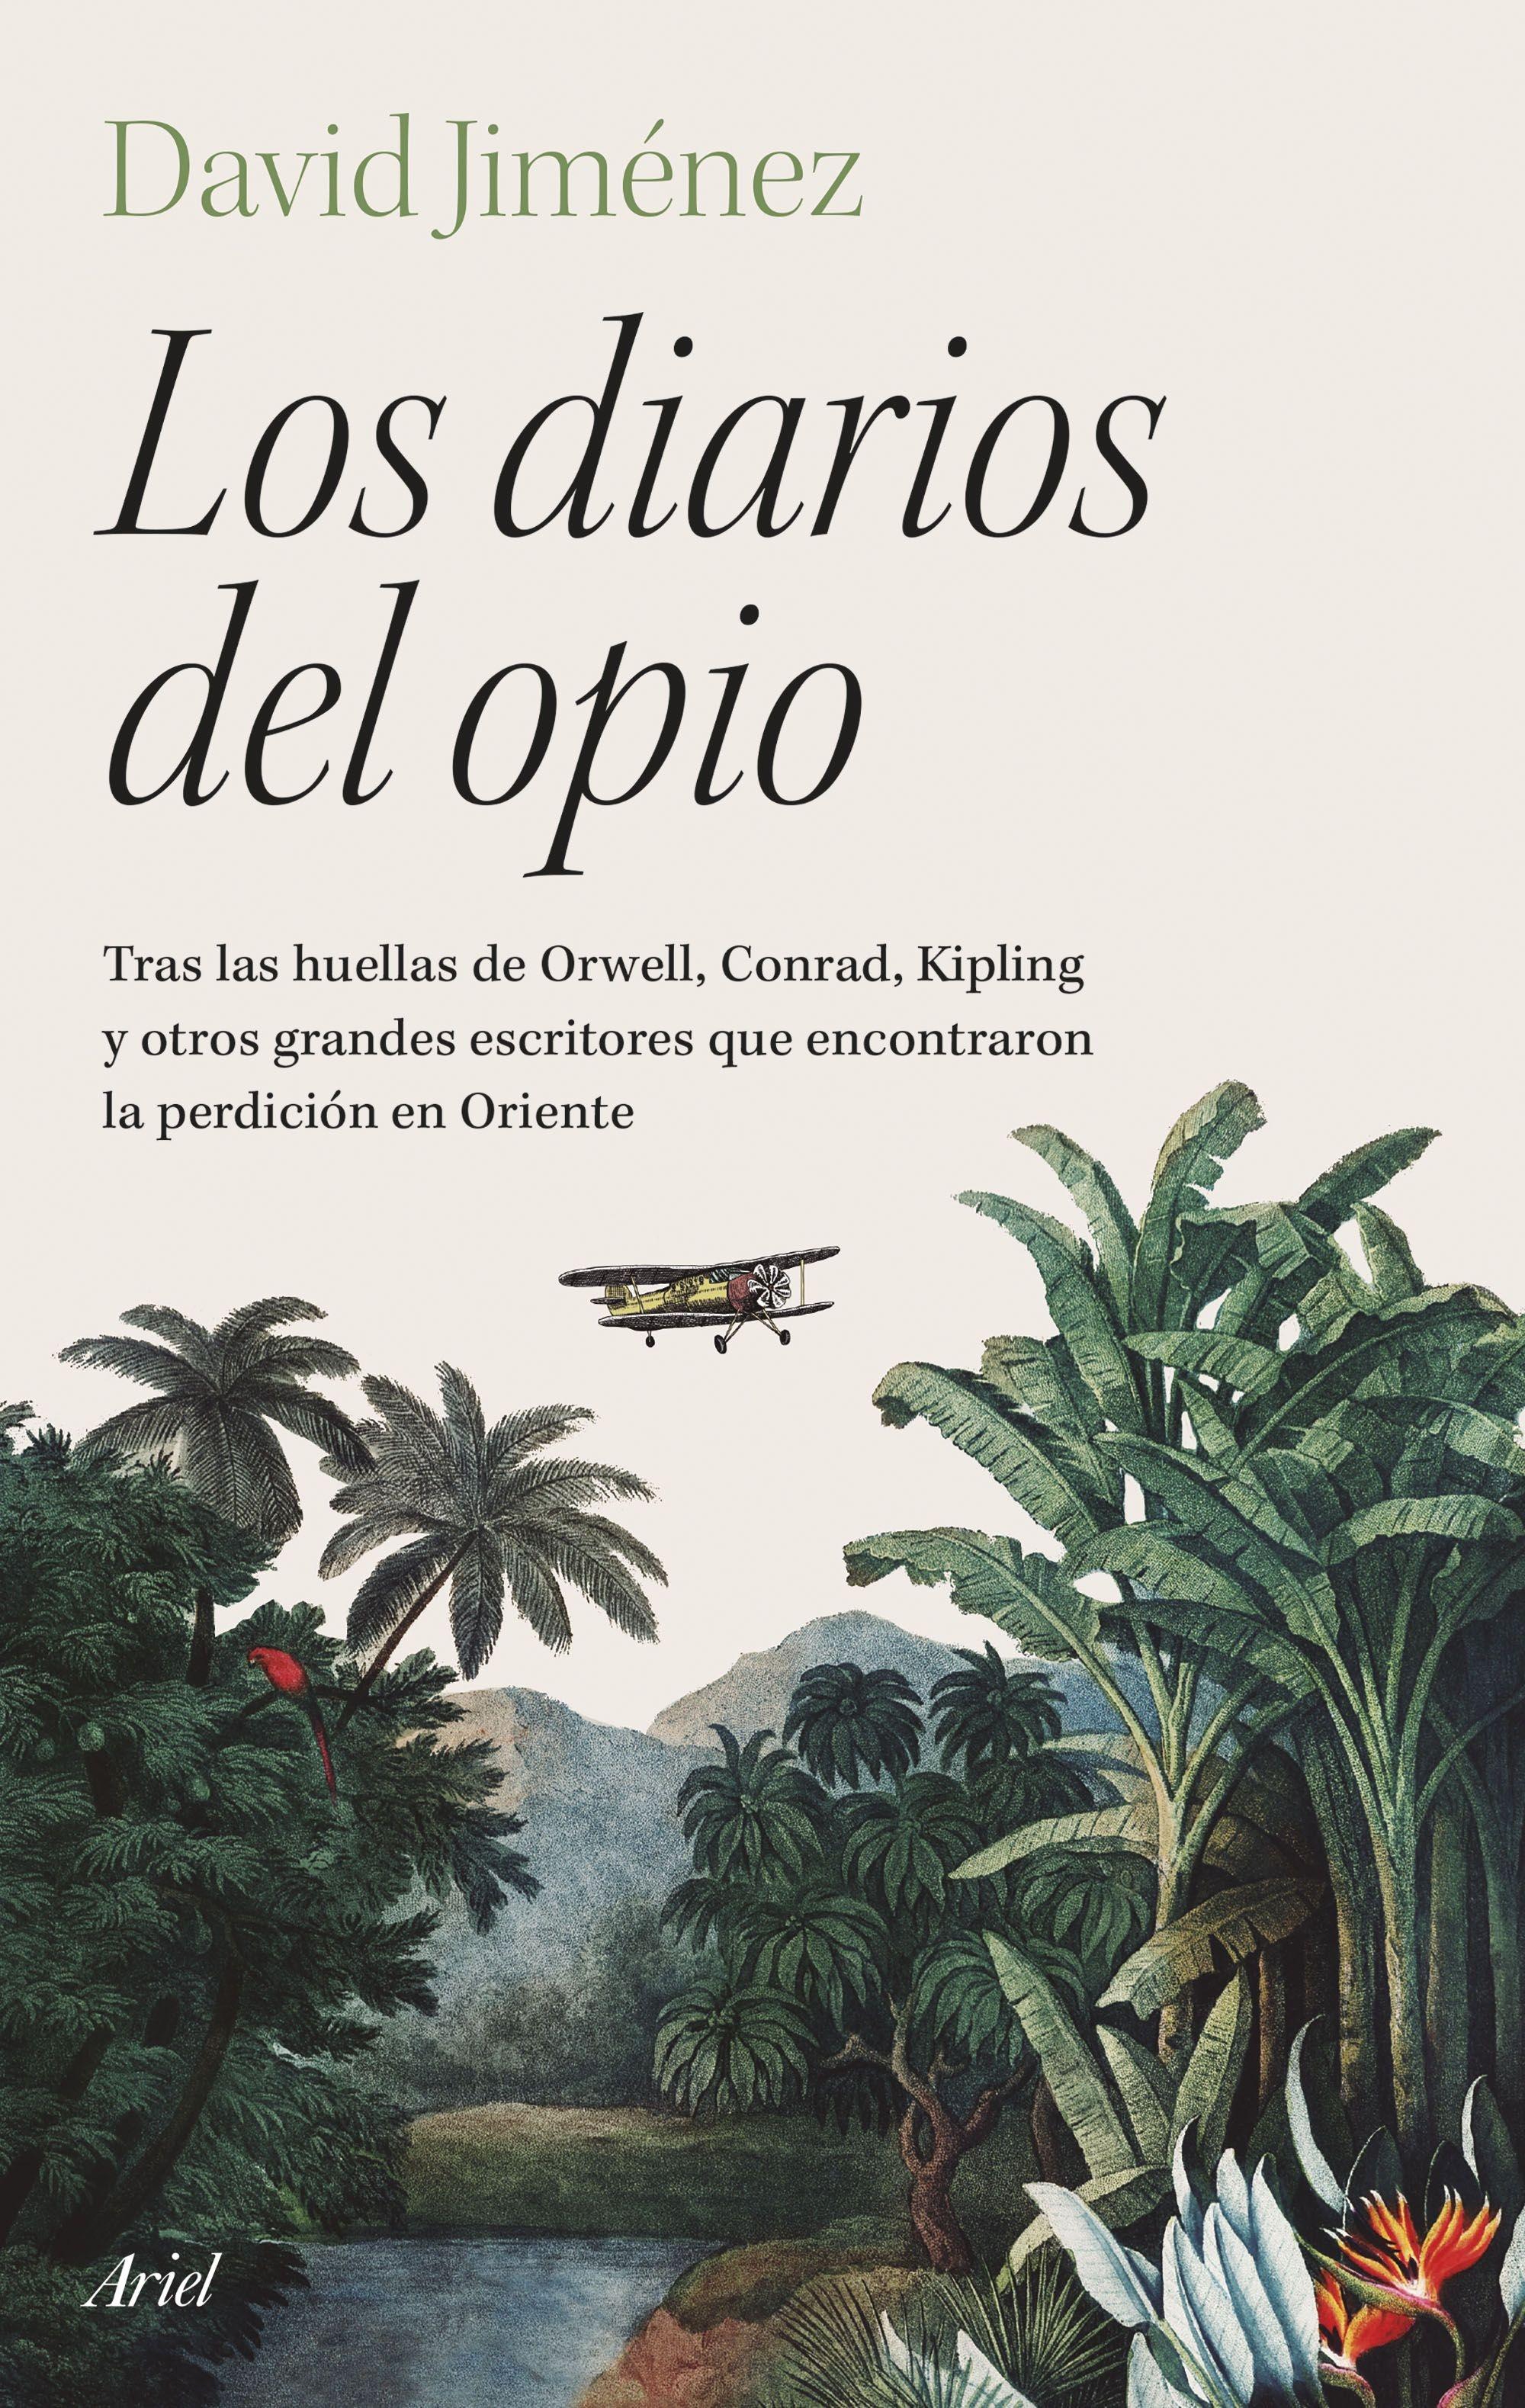 Diarios del opio, Los "Tras las huellas de Orwell, Conrad, Kipling y otros grandes escritores q"